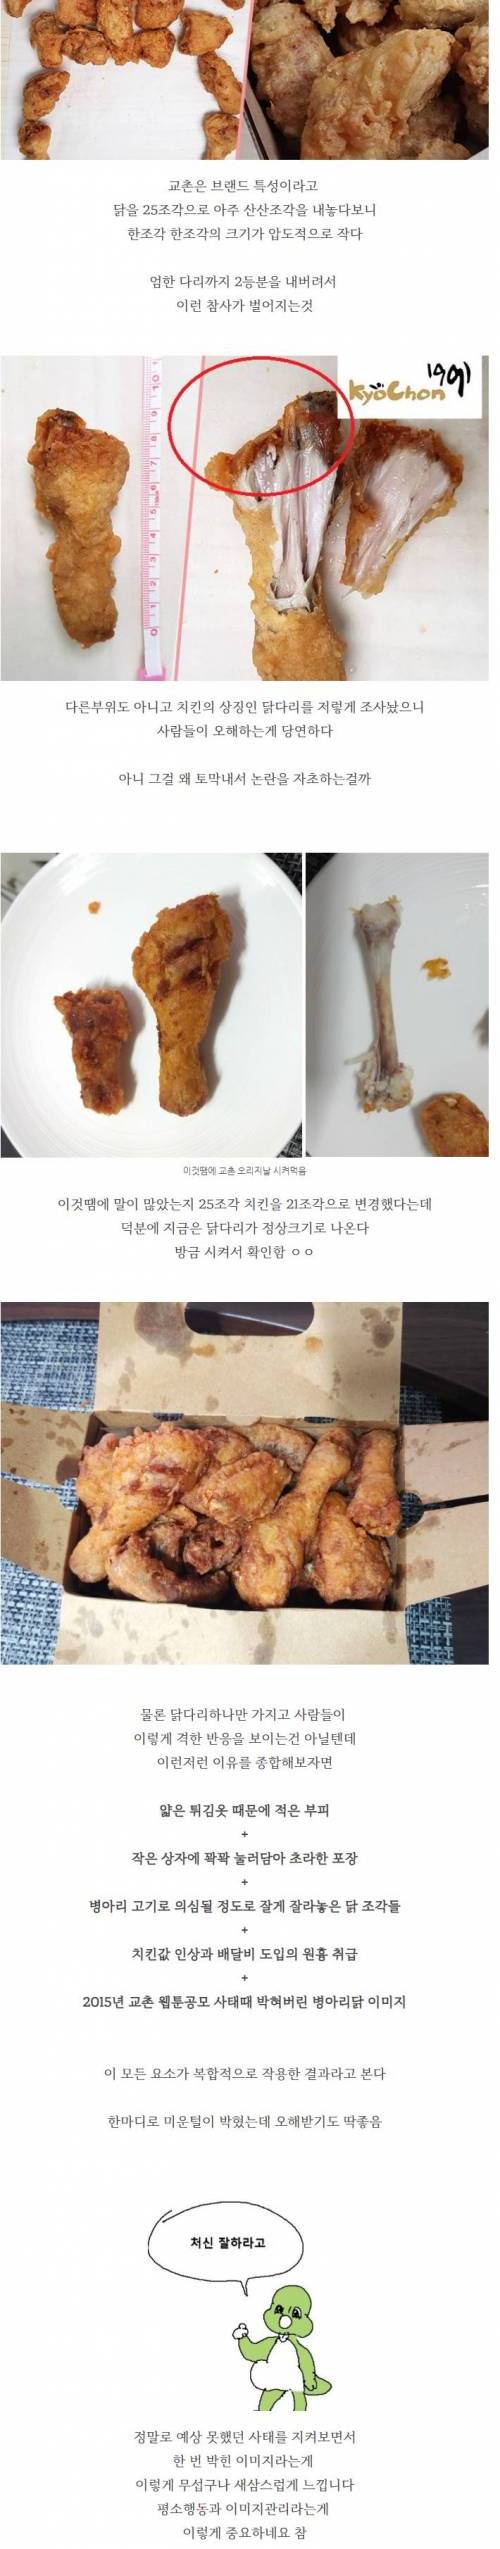 [스압] 치킨 프랜차이즈별 닭호수 + 교촌논란 정리